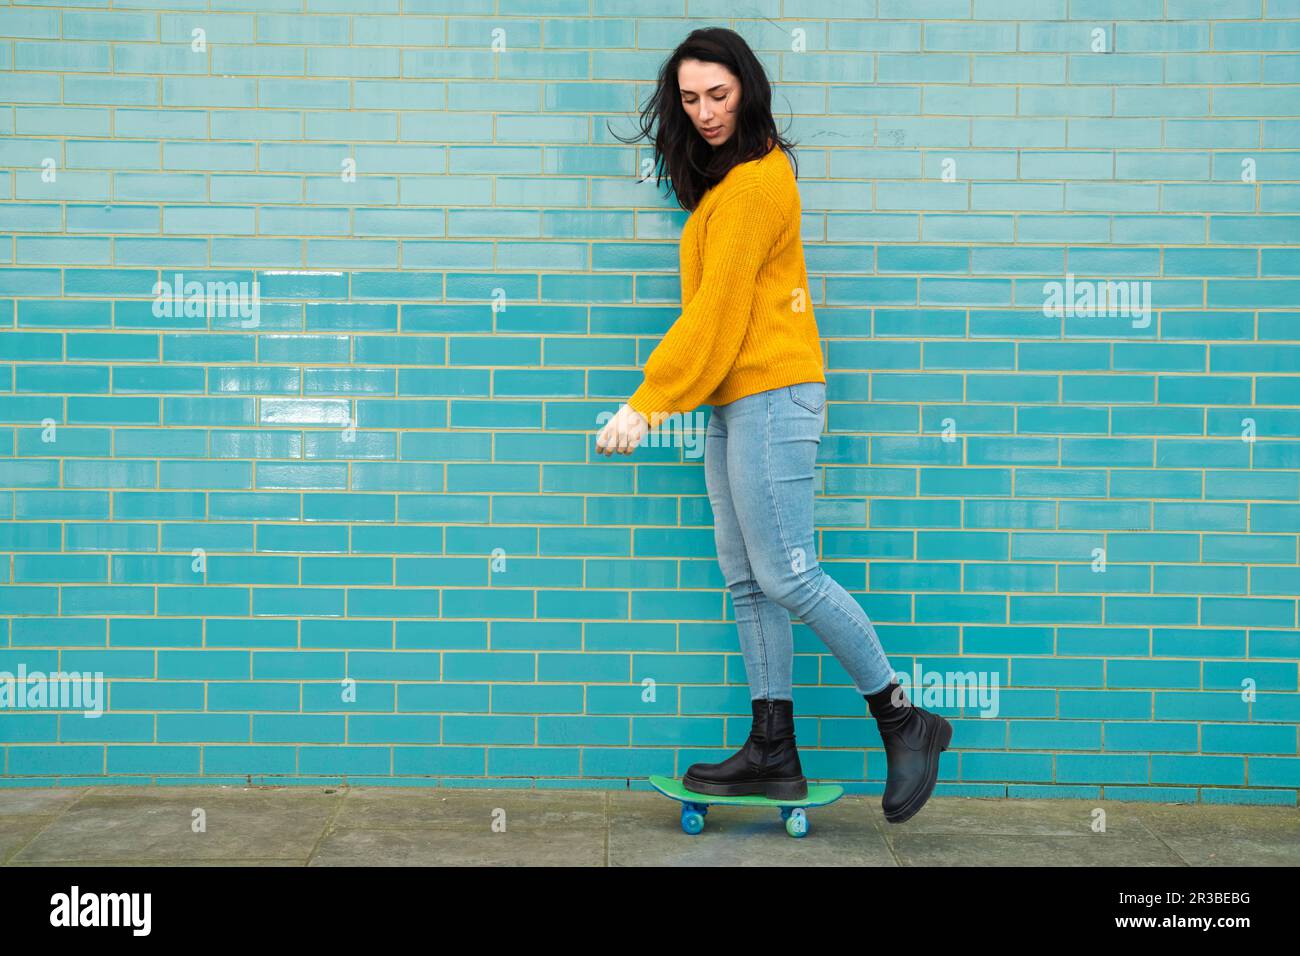 Junge Frau in legerer Kleidung, Skateboarden vor türkisfarbenen Wänden Stockfoto